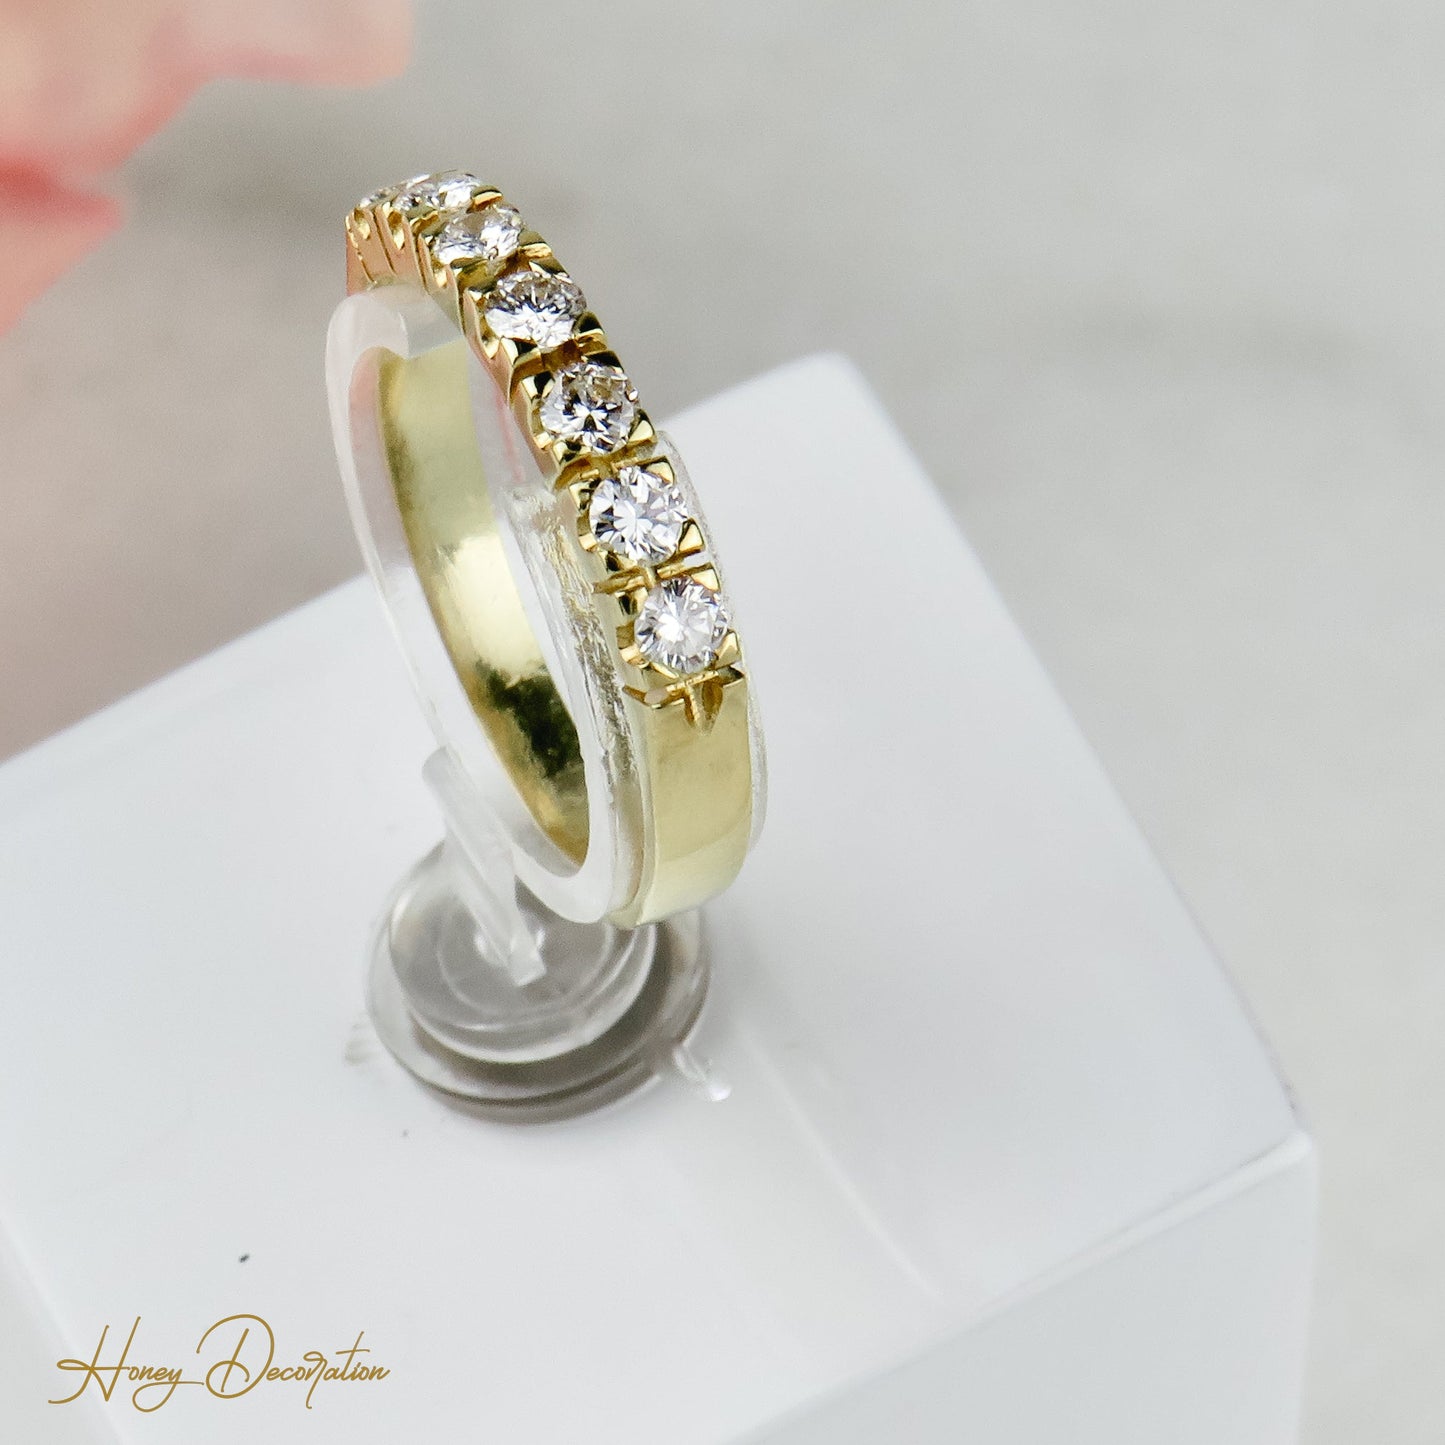 Vintage Halb-Memory Ring aus 18 Karat Gold - Honey Decoration